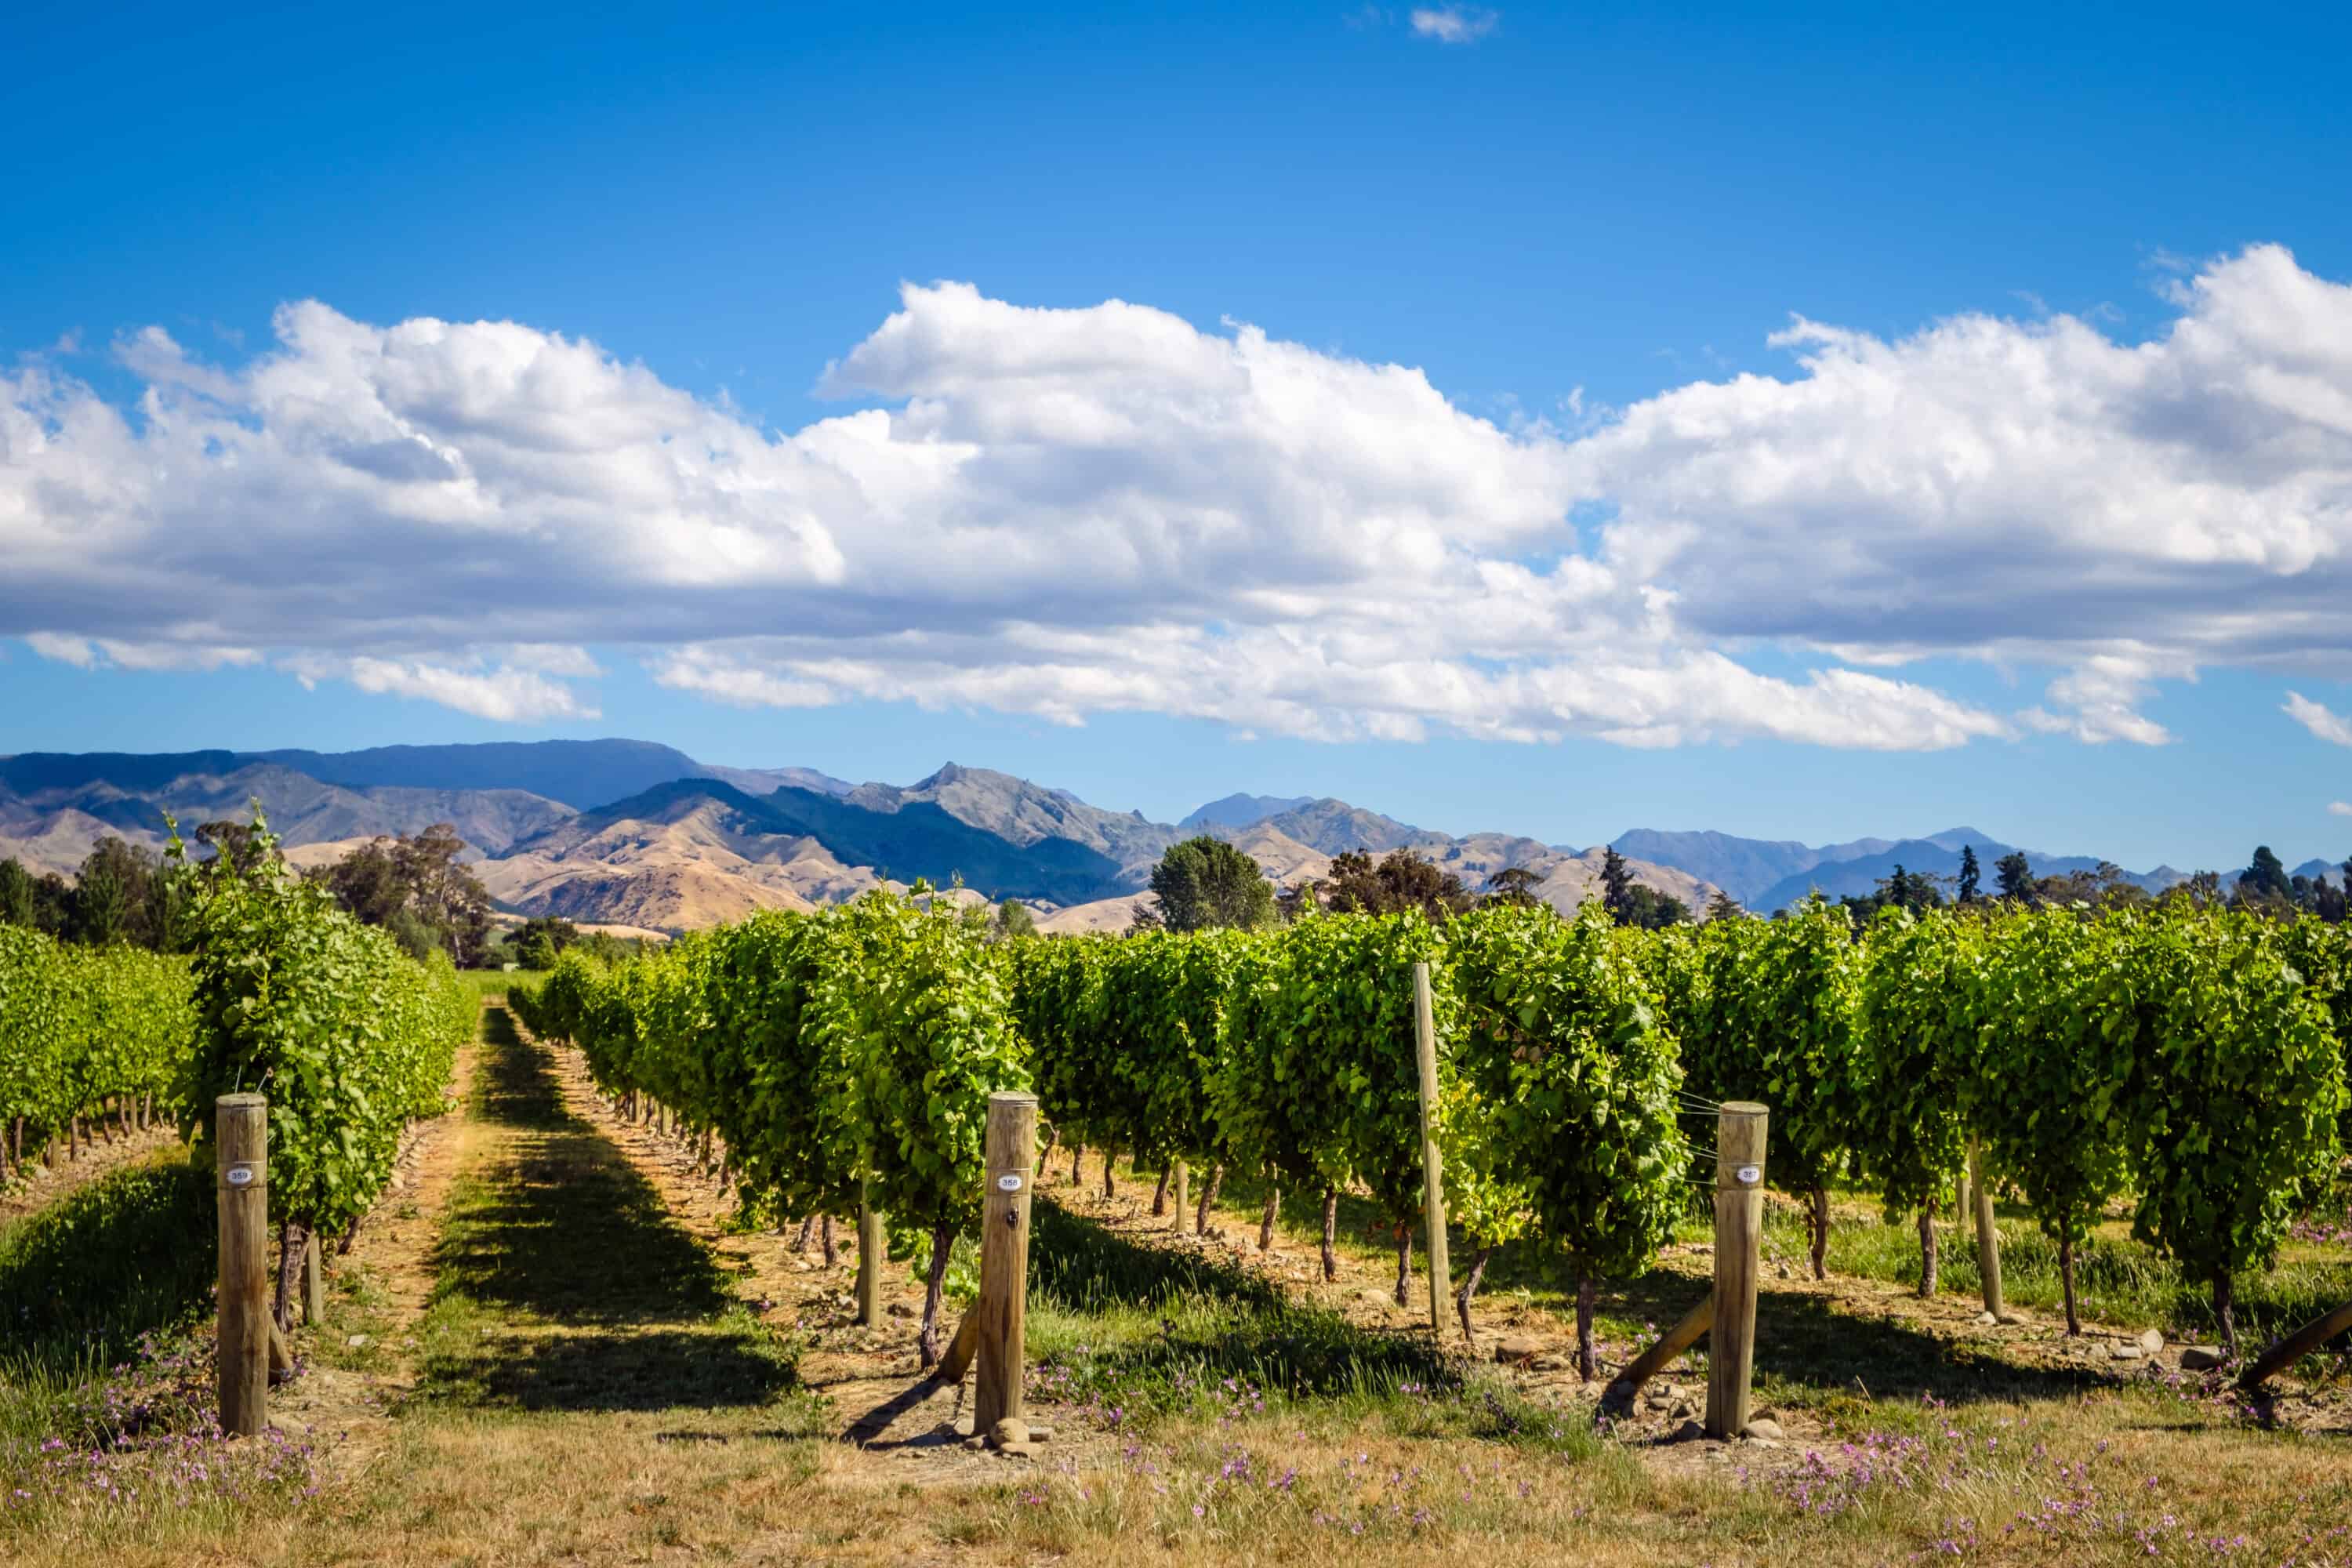 Landscape view of vineyard in Marlborough wine country,NZ
